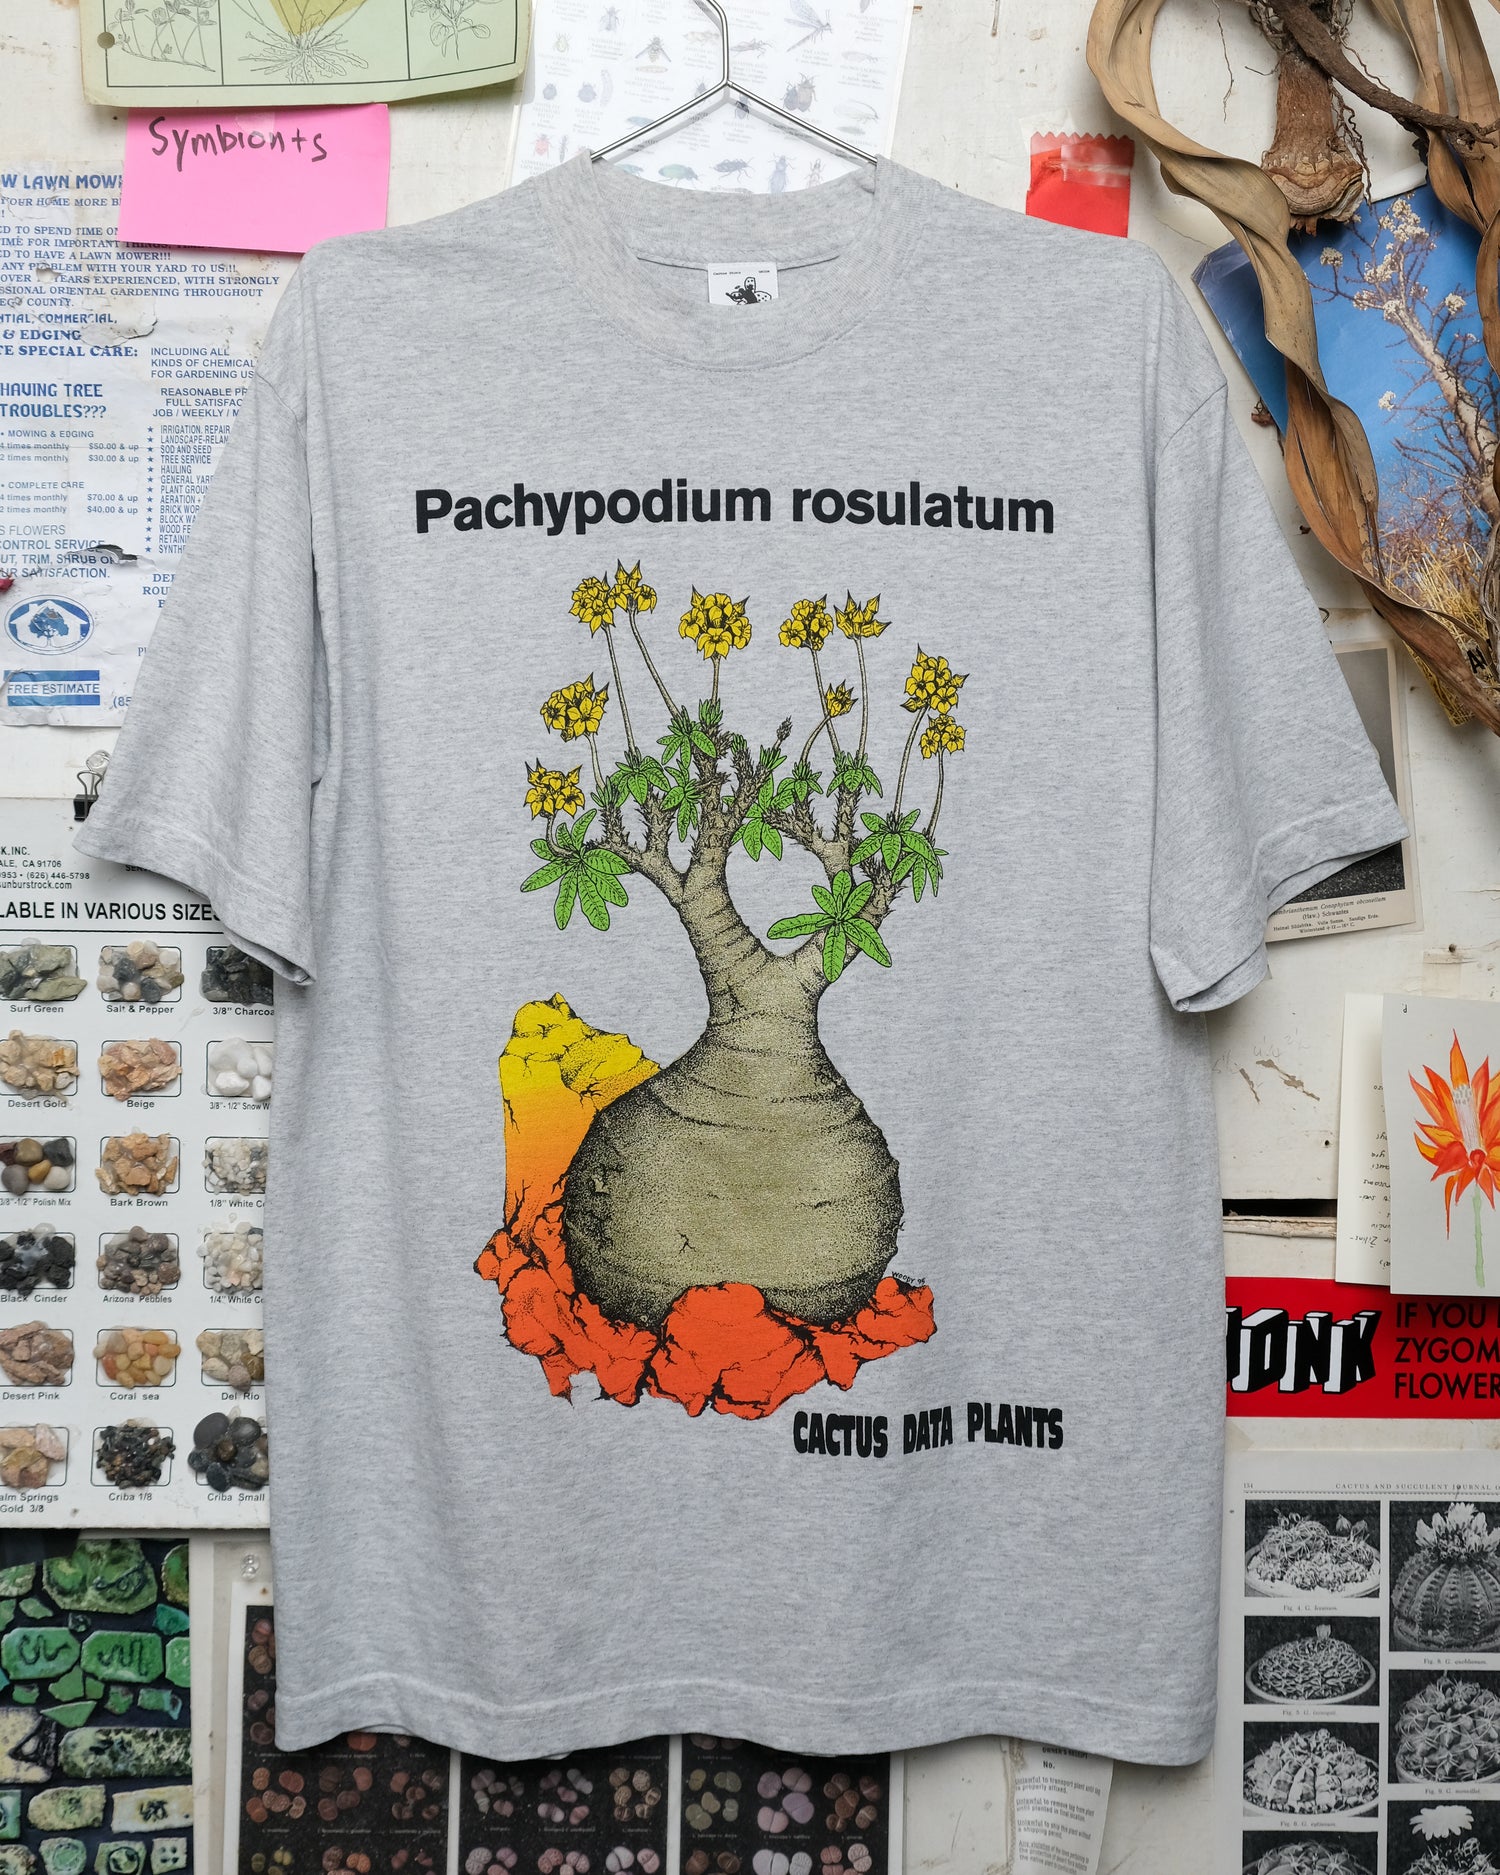 Pachypodium rosulatum (Union Tokyo)